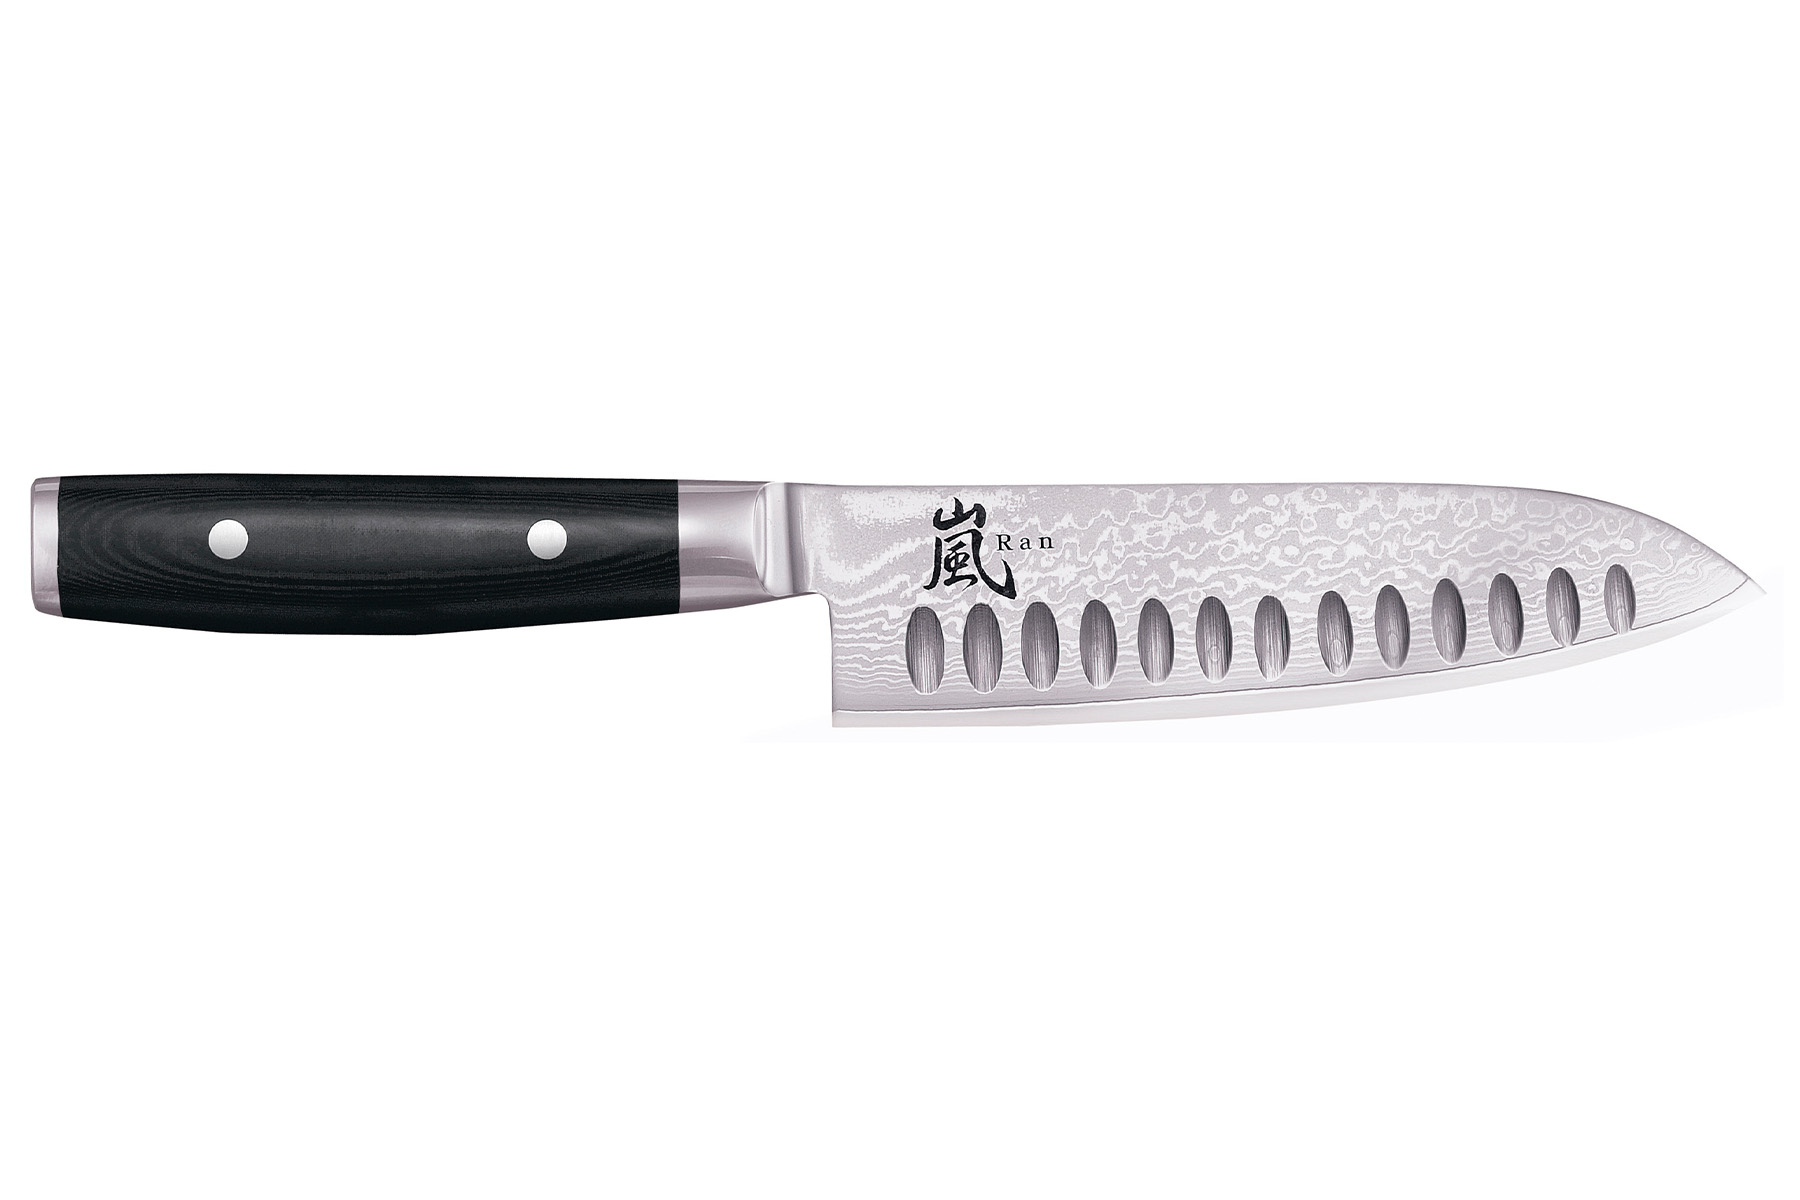 Couteau japonais Yaxell "Ran" - Couteau santoku lame alvole 16,5 cm